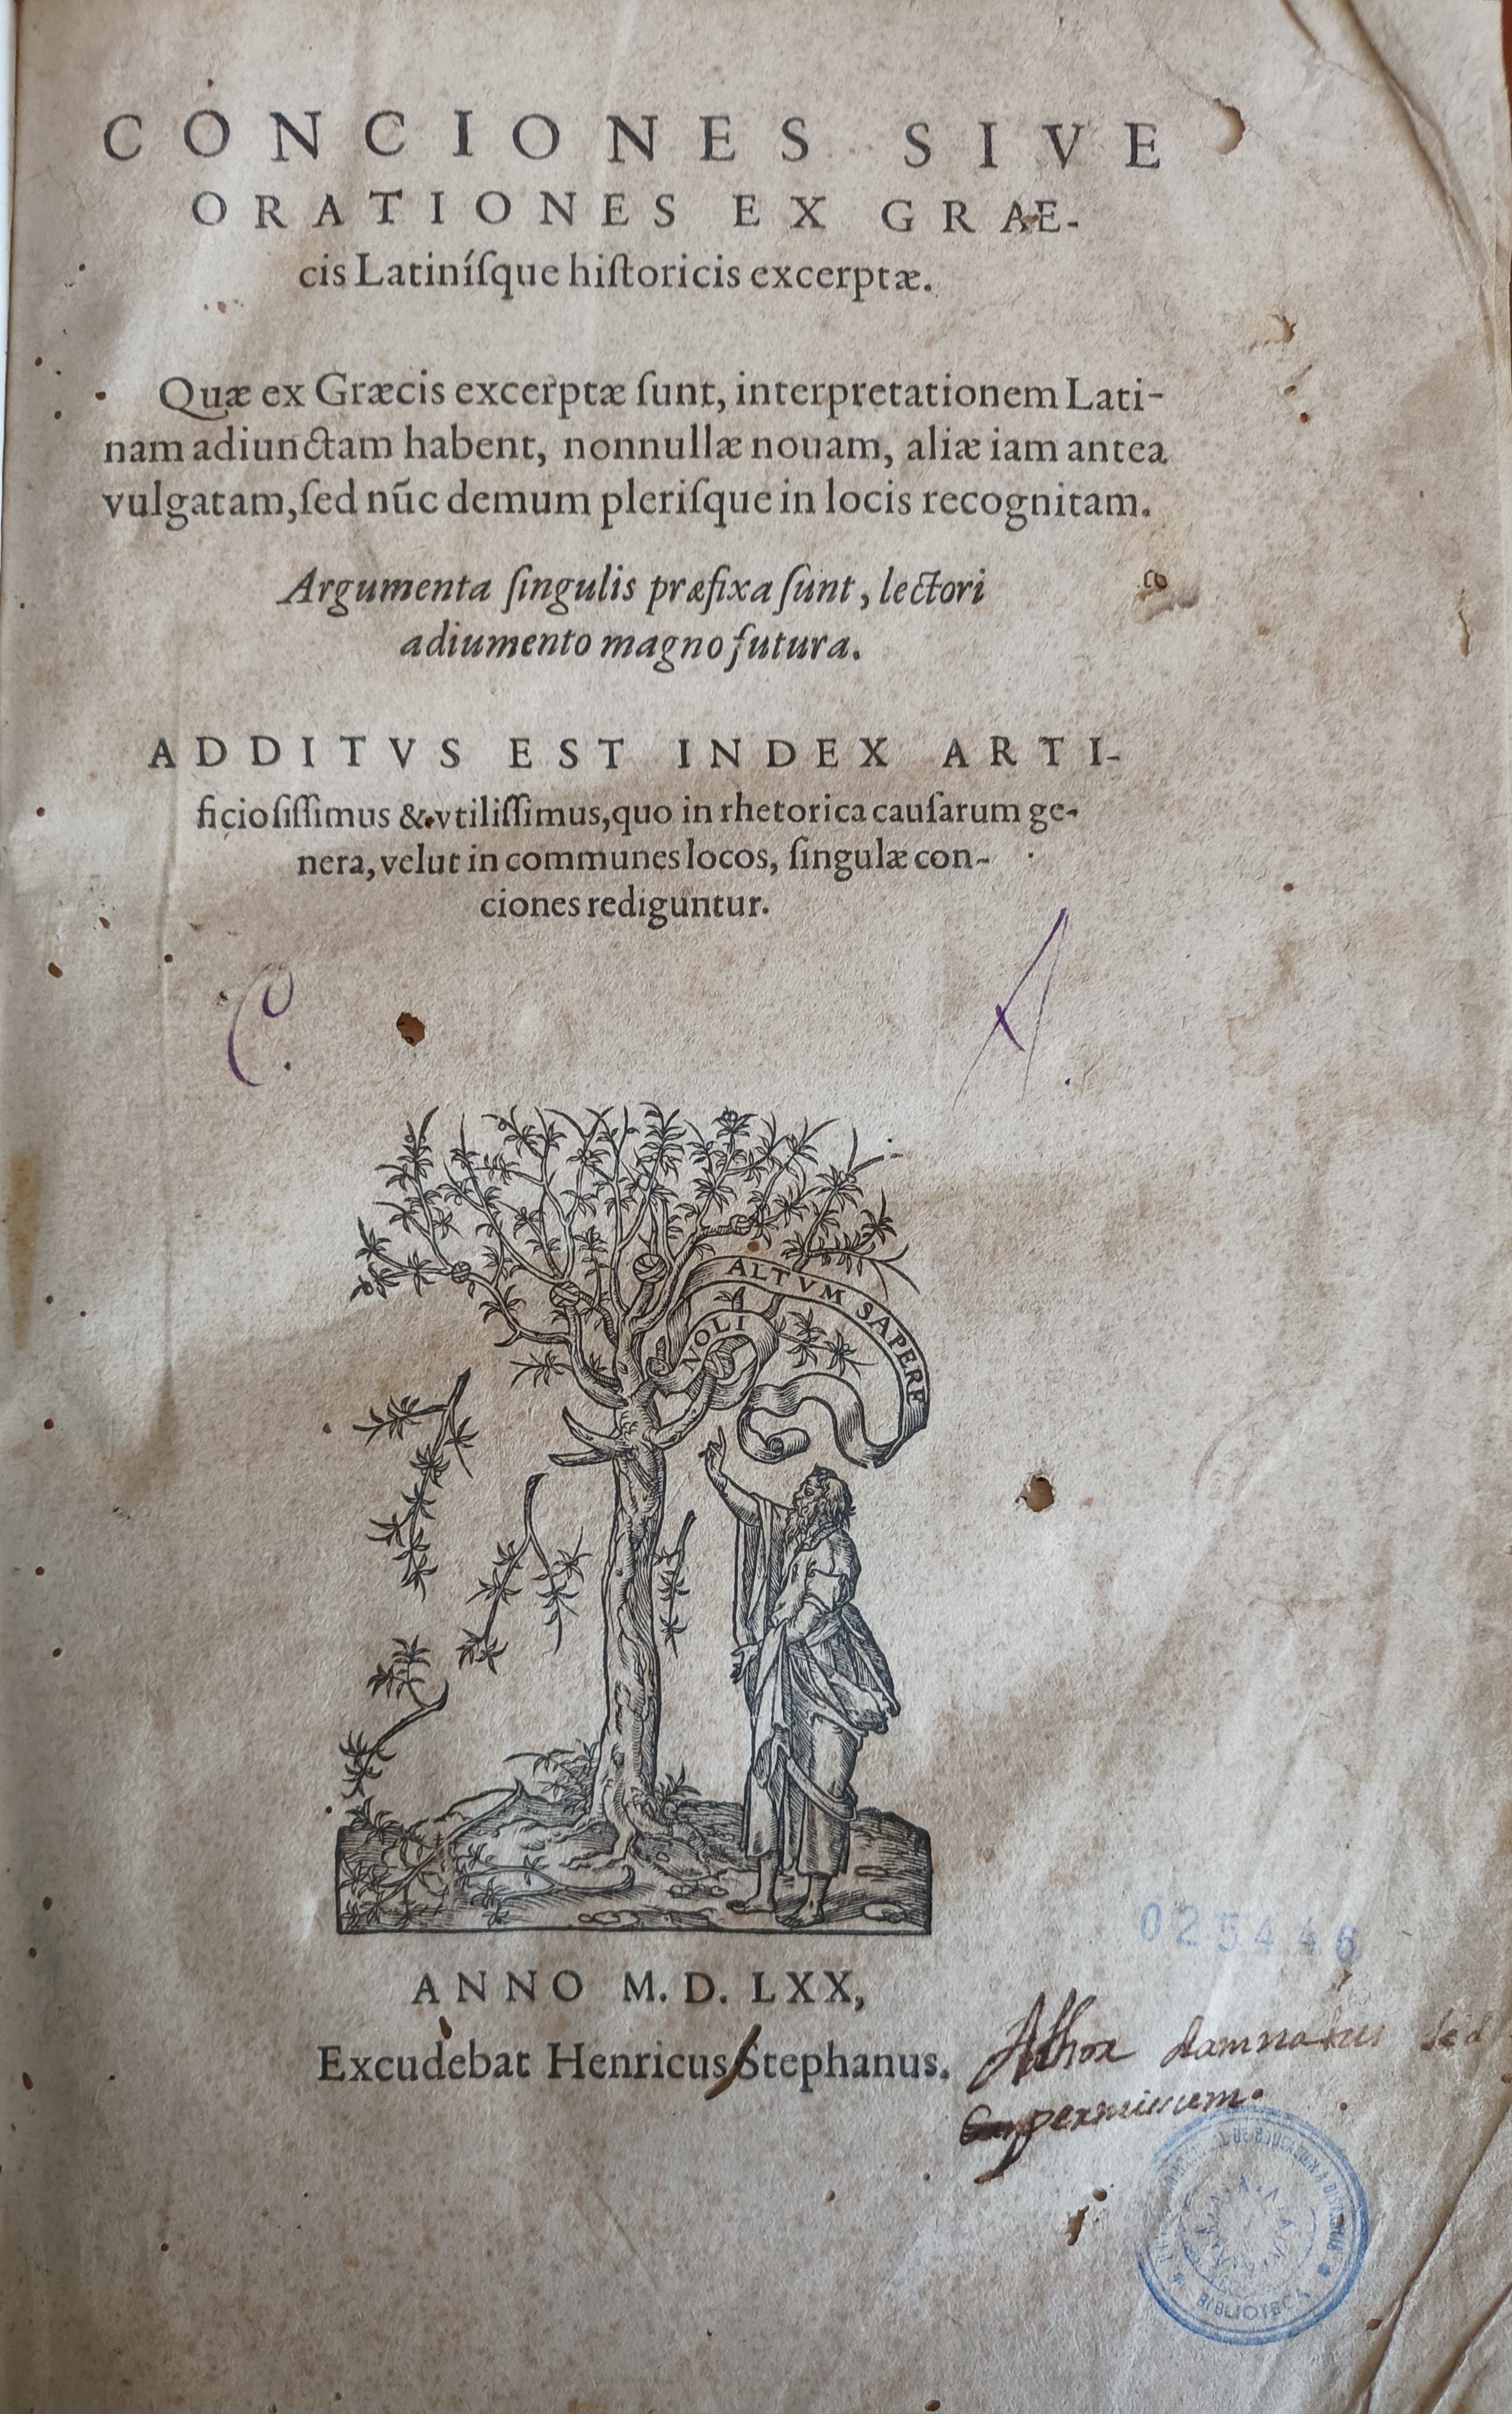 Conciones siue Orationes ex graecis latinisque historicis excerptae, 1570